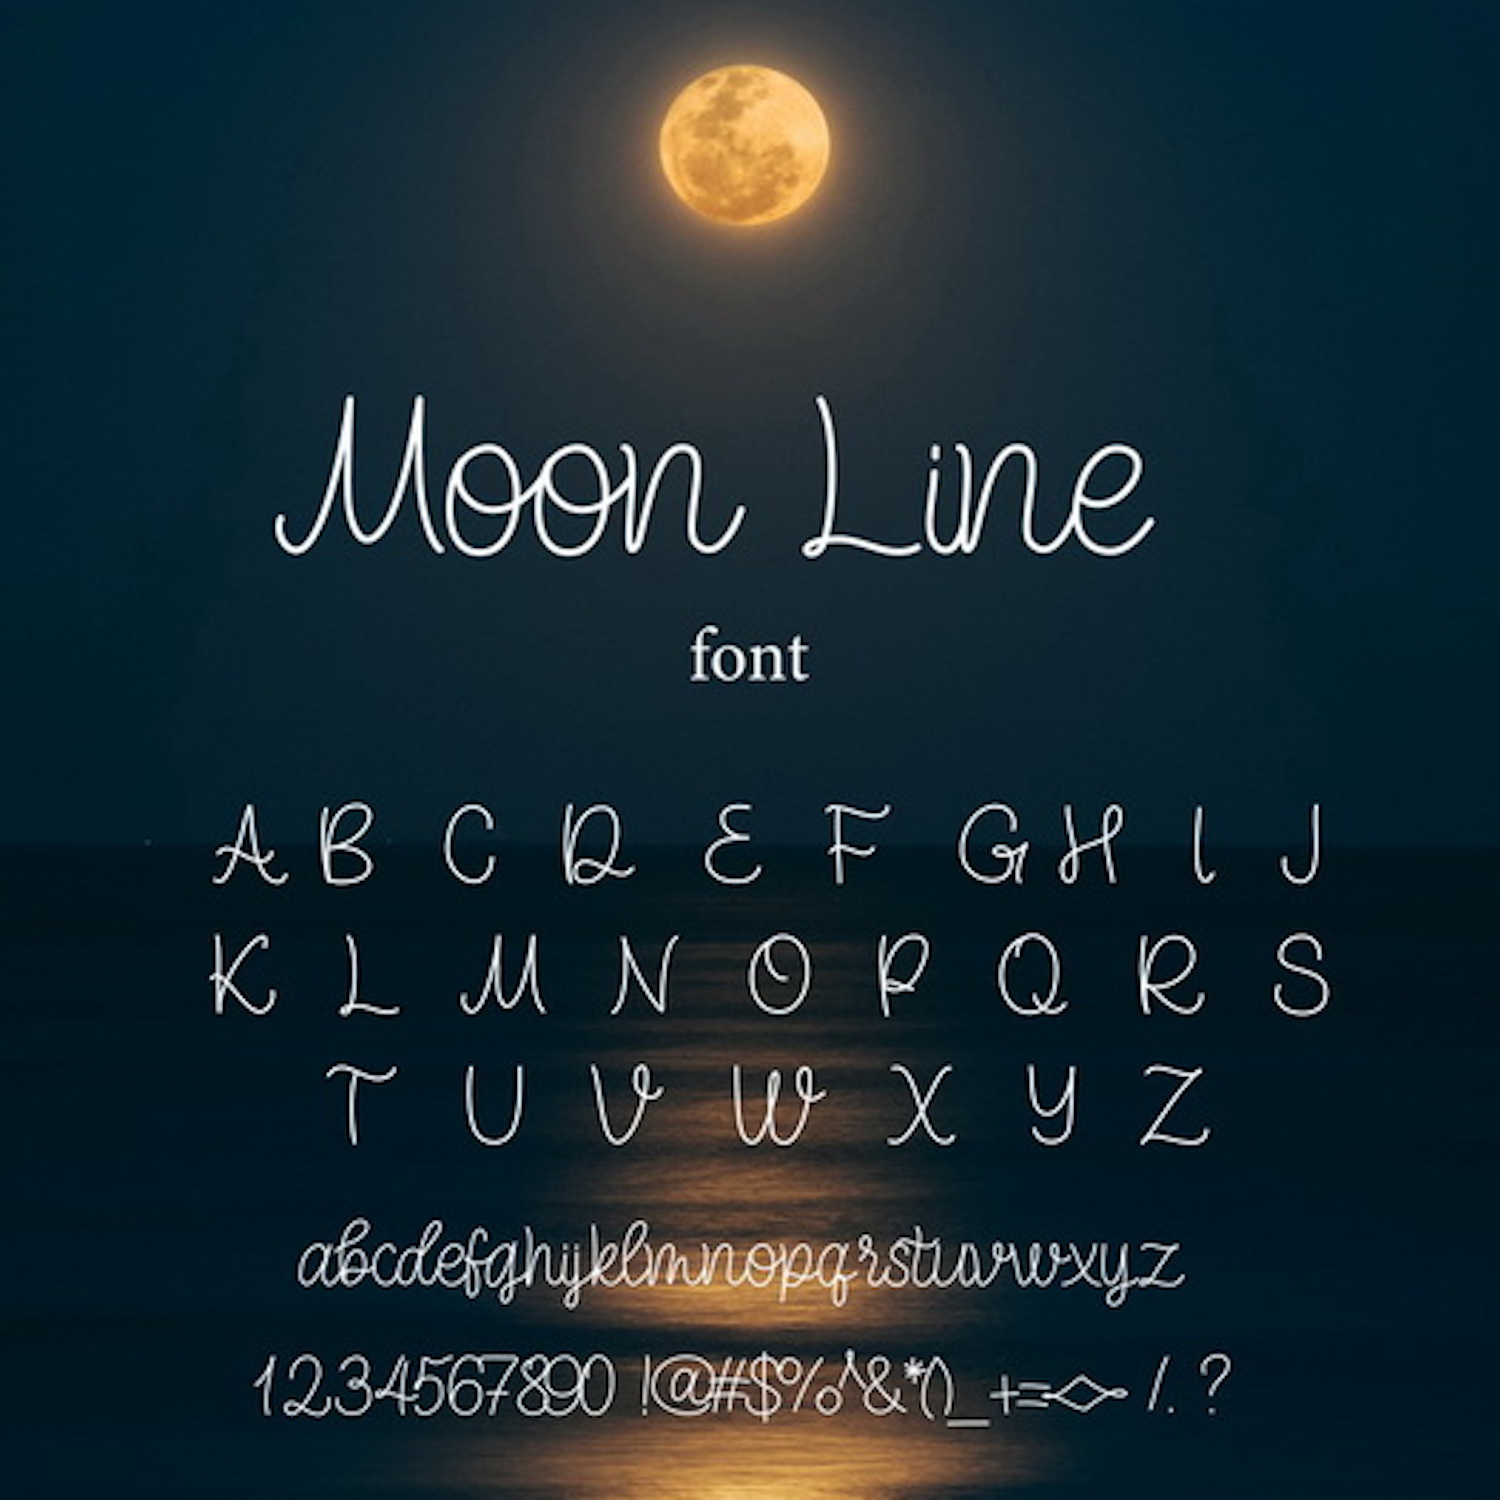 Moon Line Unique Monoline Script Font cover image.